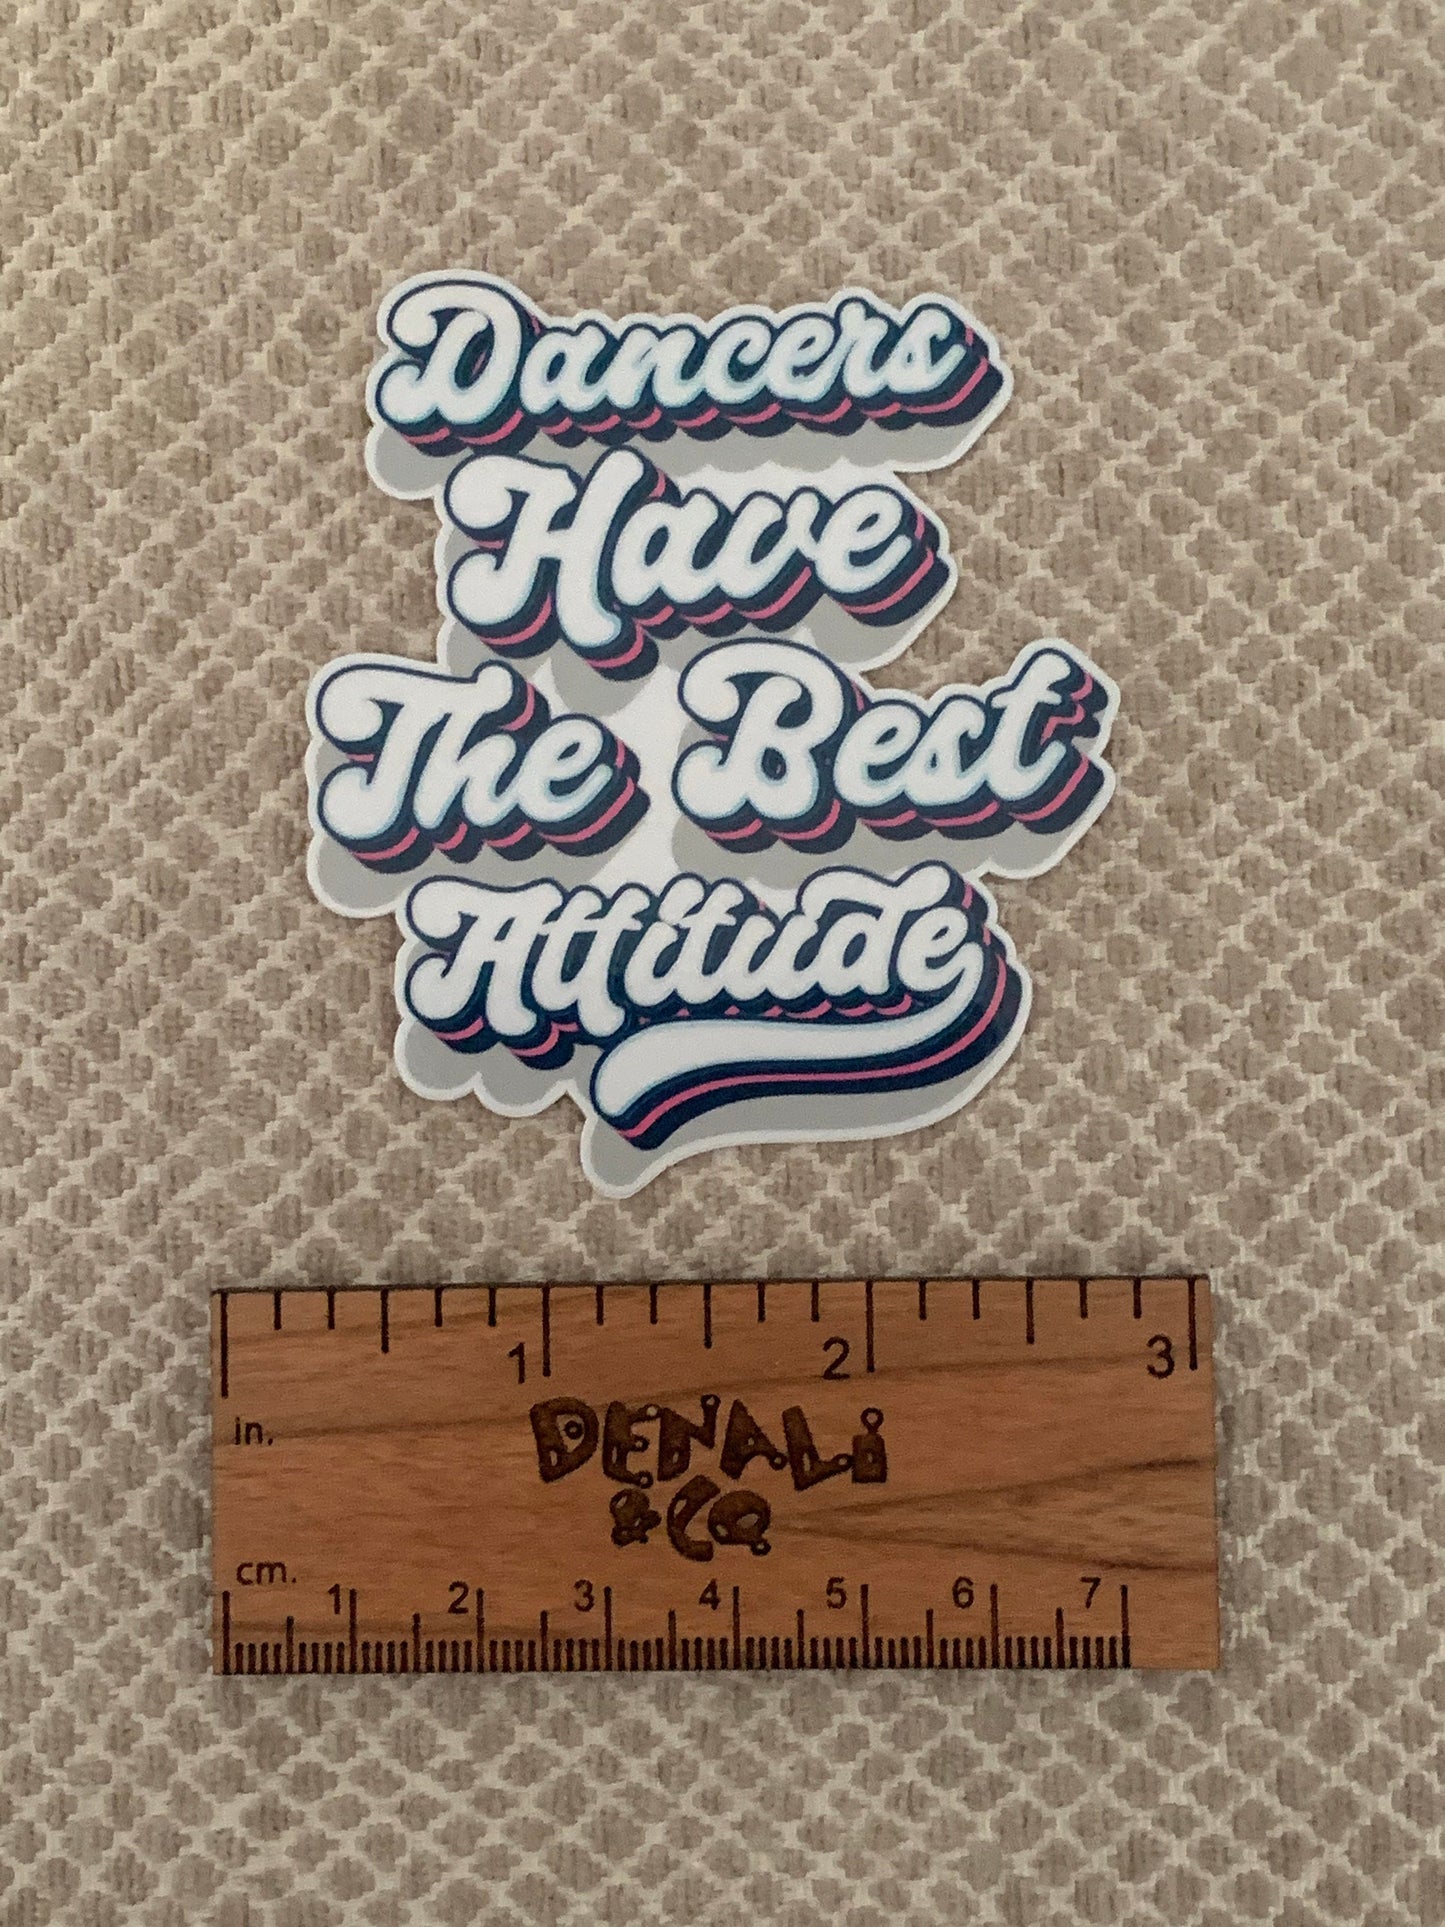 Dancers Have the Best Attitude Vintage Vinyl Sticker, Vinyl Decal, Laptop Sticker, Dance Sticker, Gifts For Dancers,